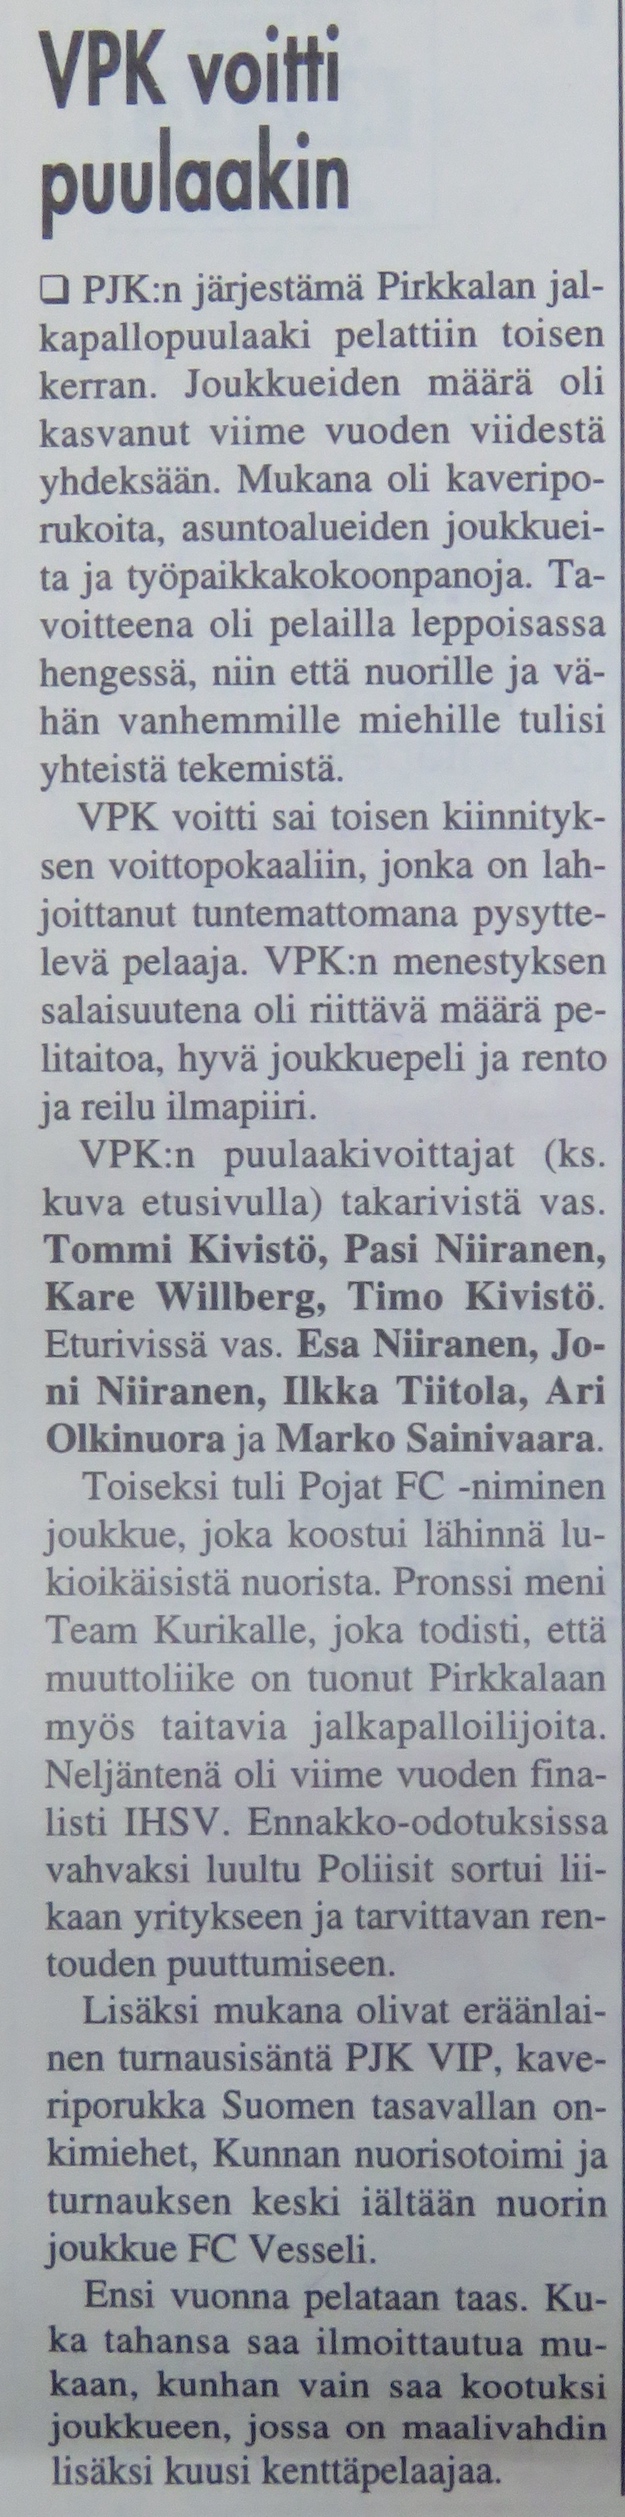 Turnausraportti Pirkkalaisessa 03.10. 2001